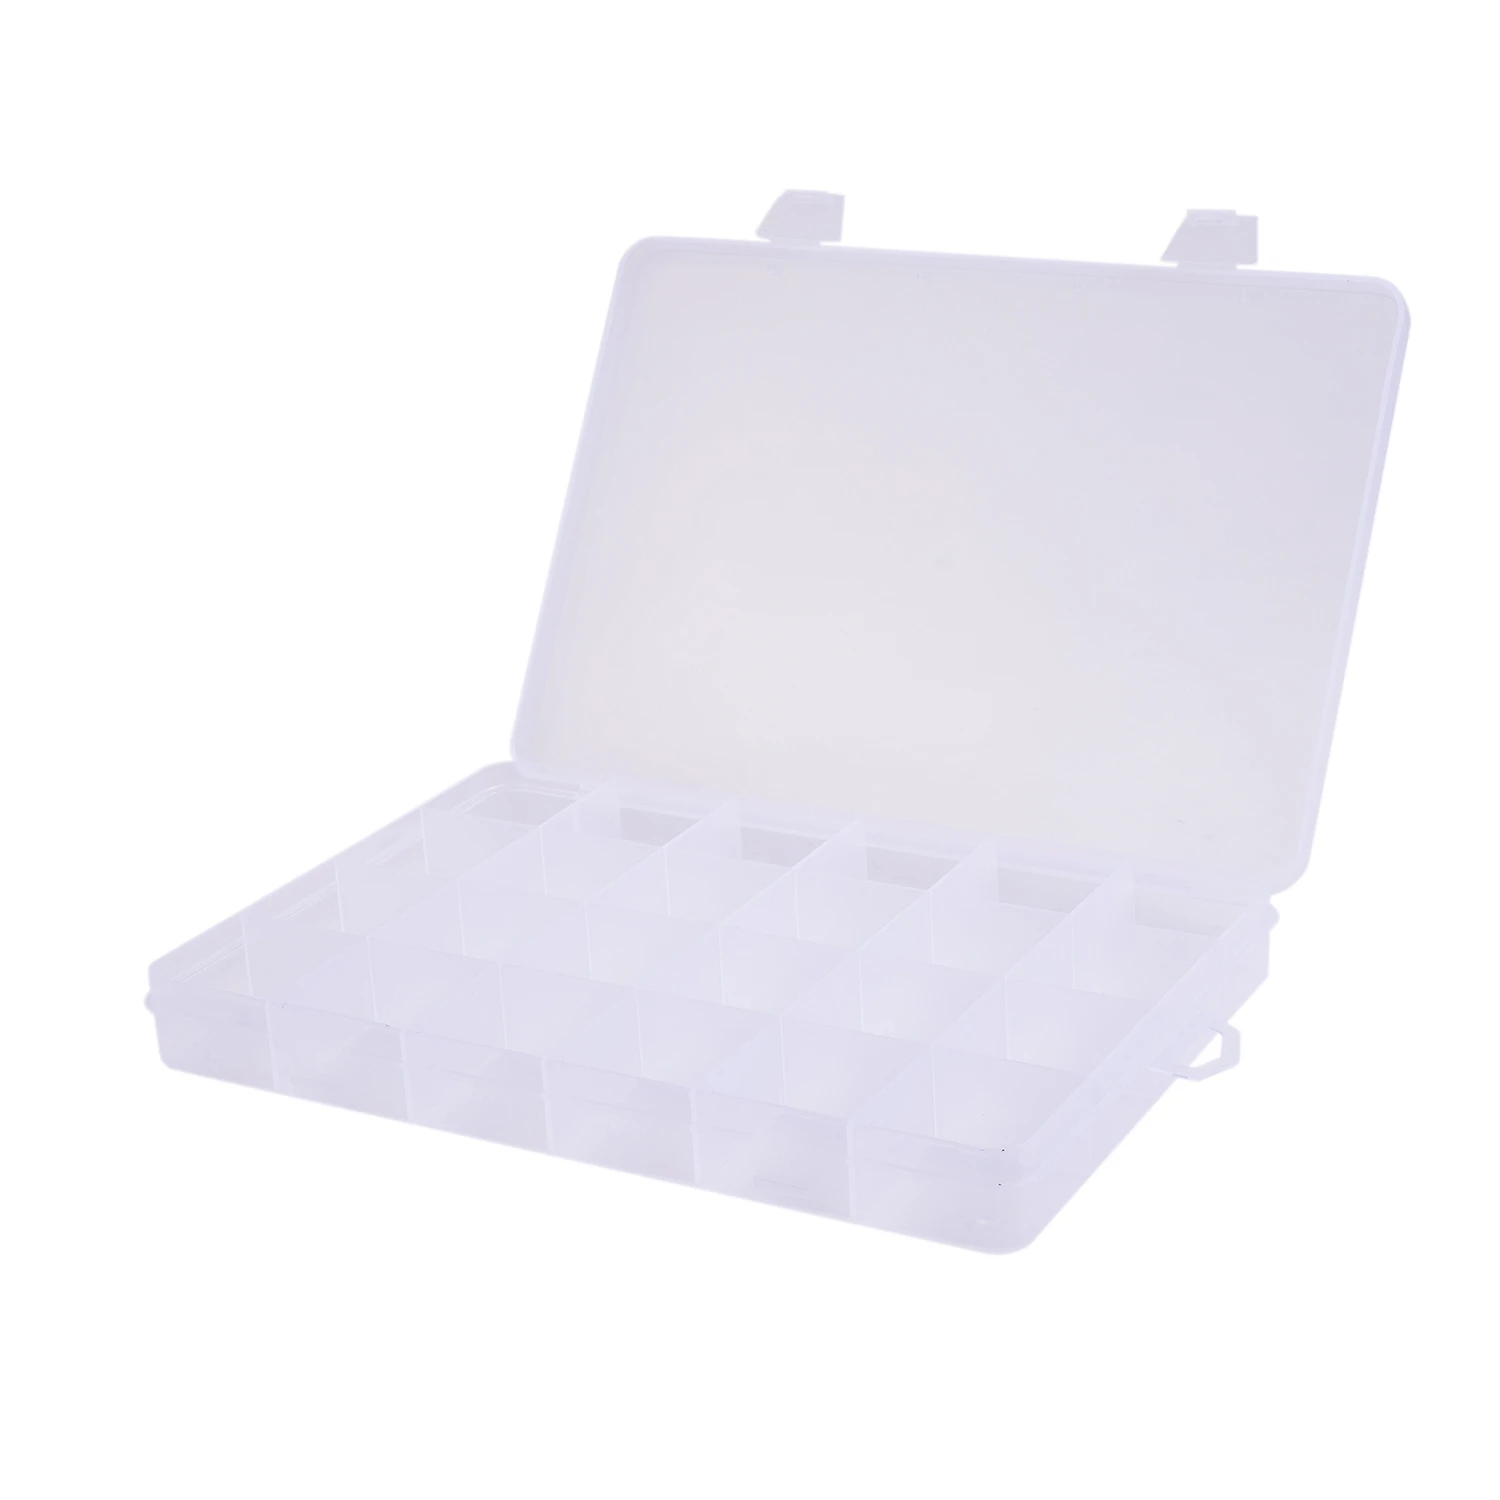 Пластиковая коробка с 24 отделениями, Контейнер для хранения ювелирных изделий из бисера, Поделка - 0